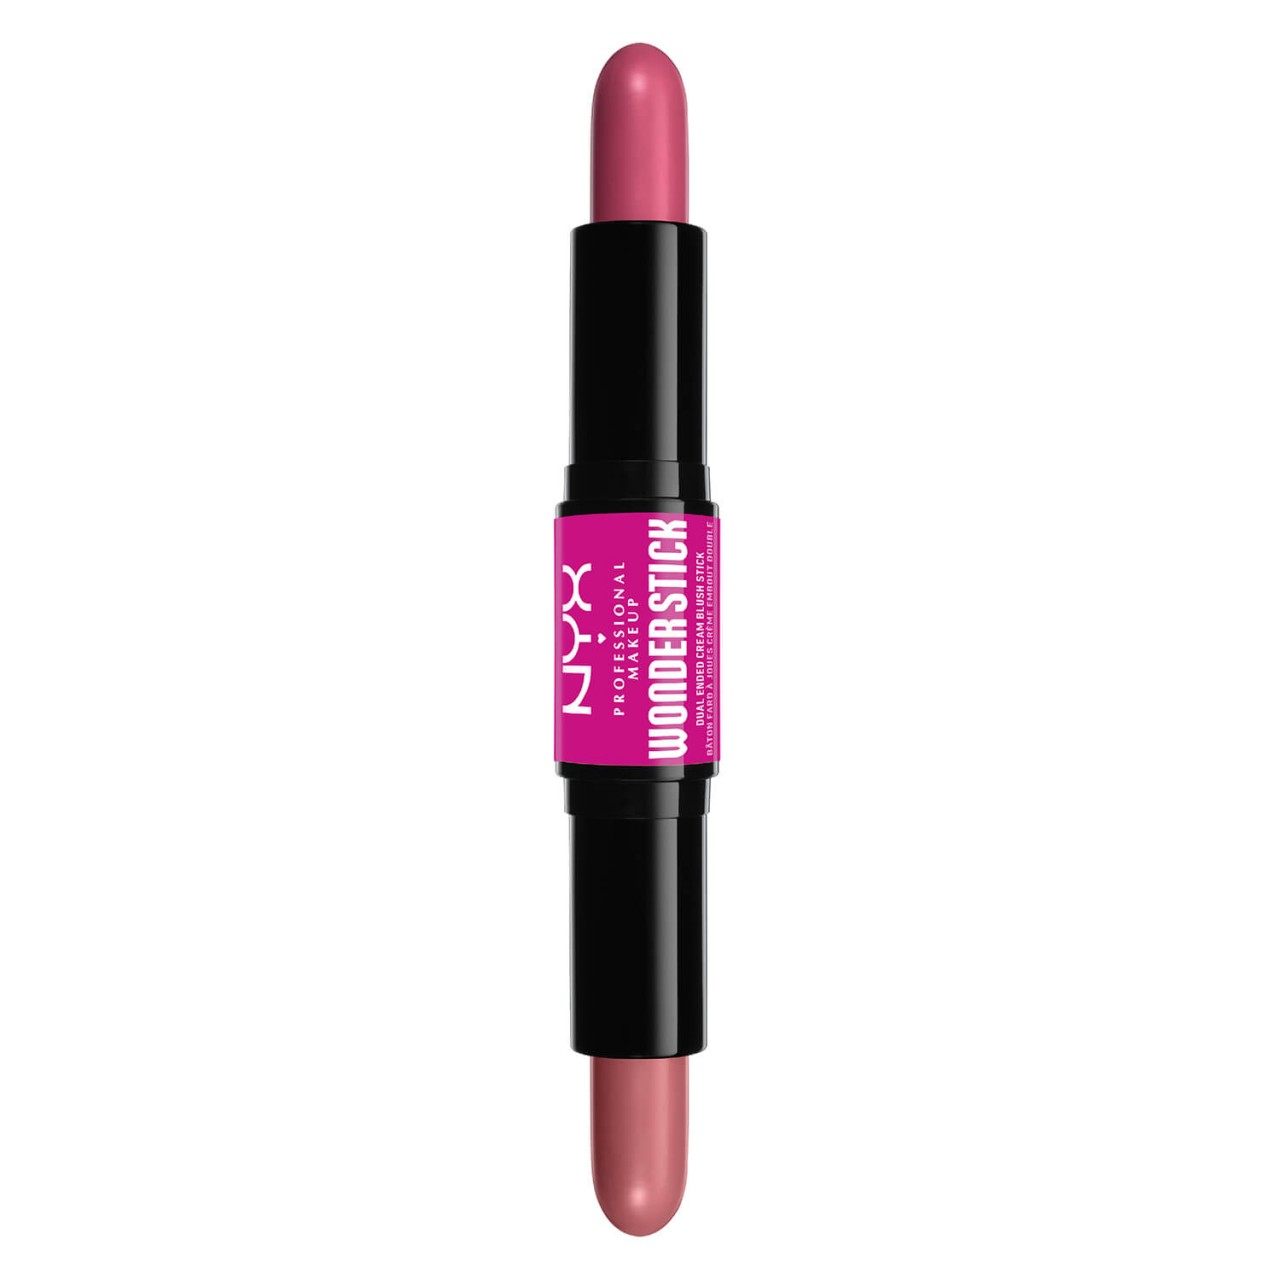 Wonder Stick Blush - Light Peach N Baby Pink von NYX Professional Makeup